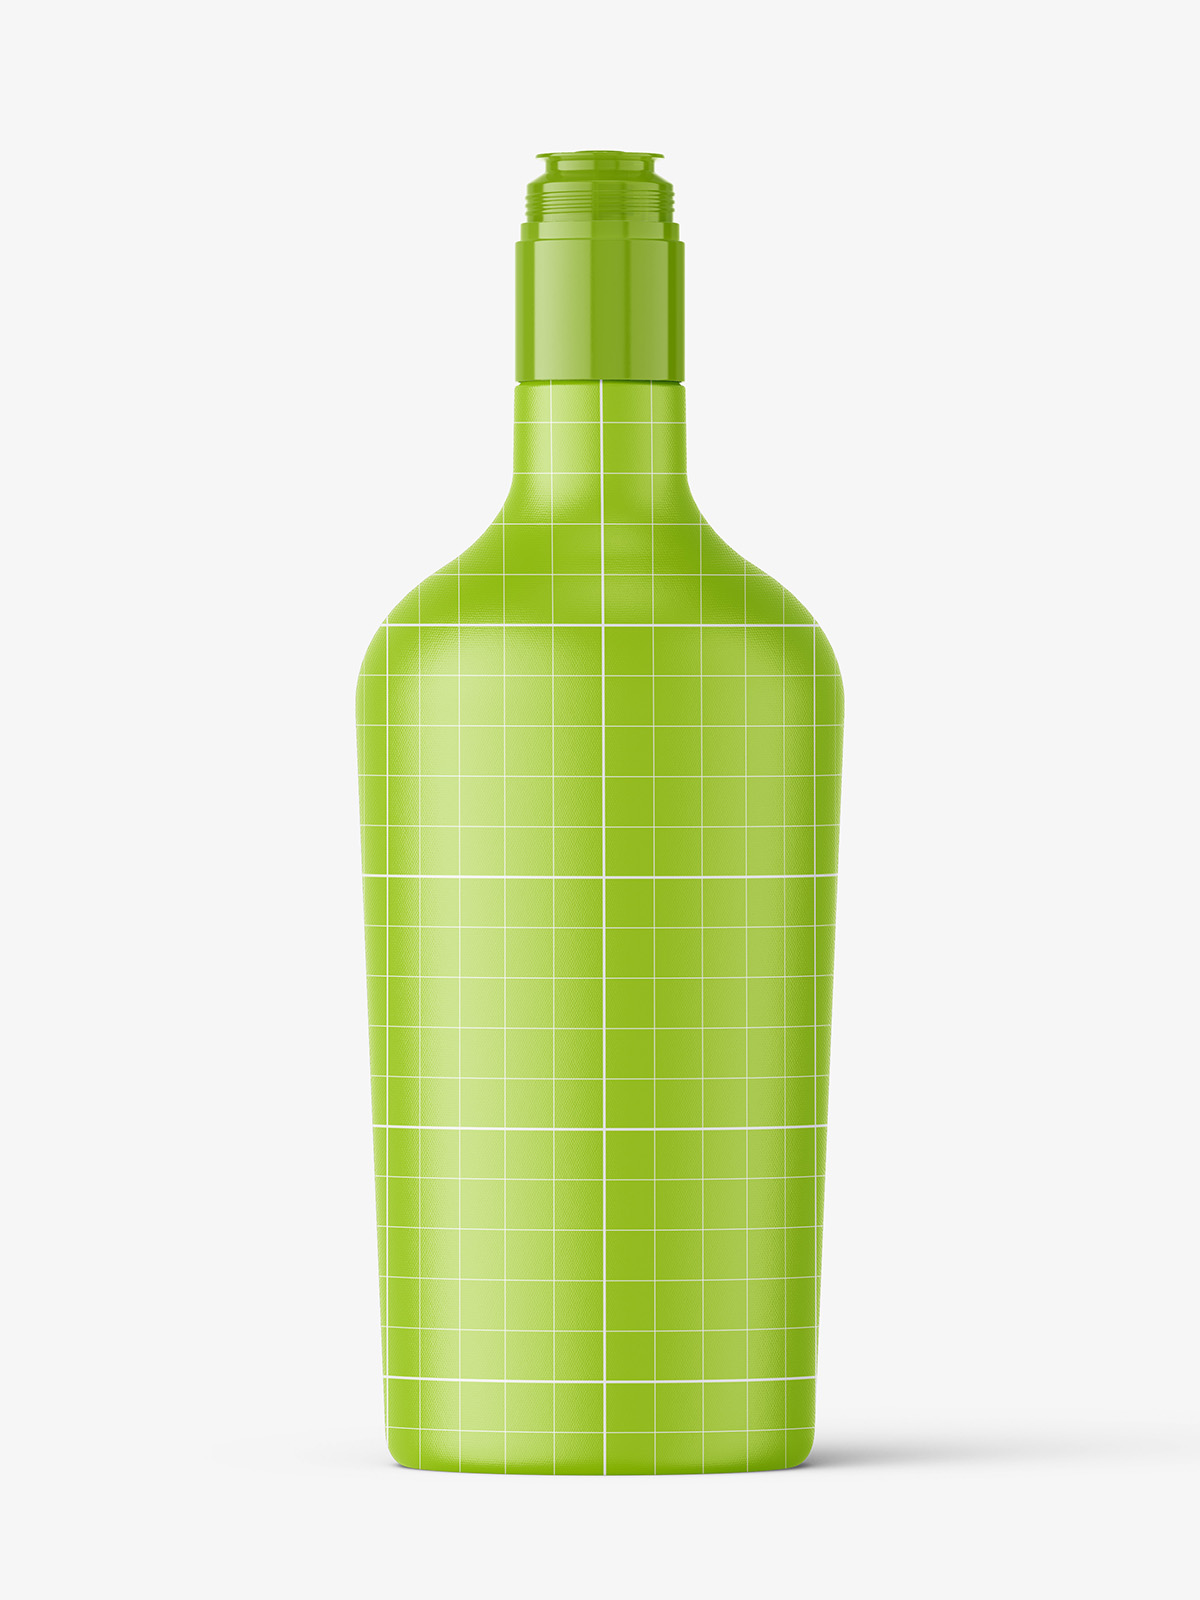 Download Olive bottle mockup / 750 ml - Smarty Mockups